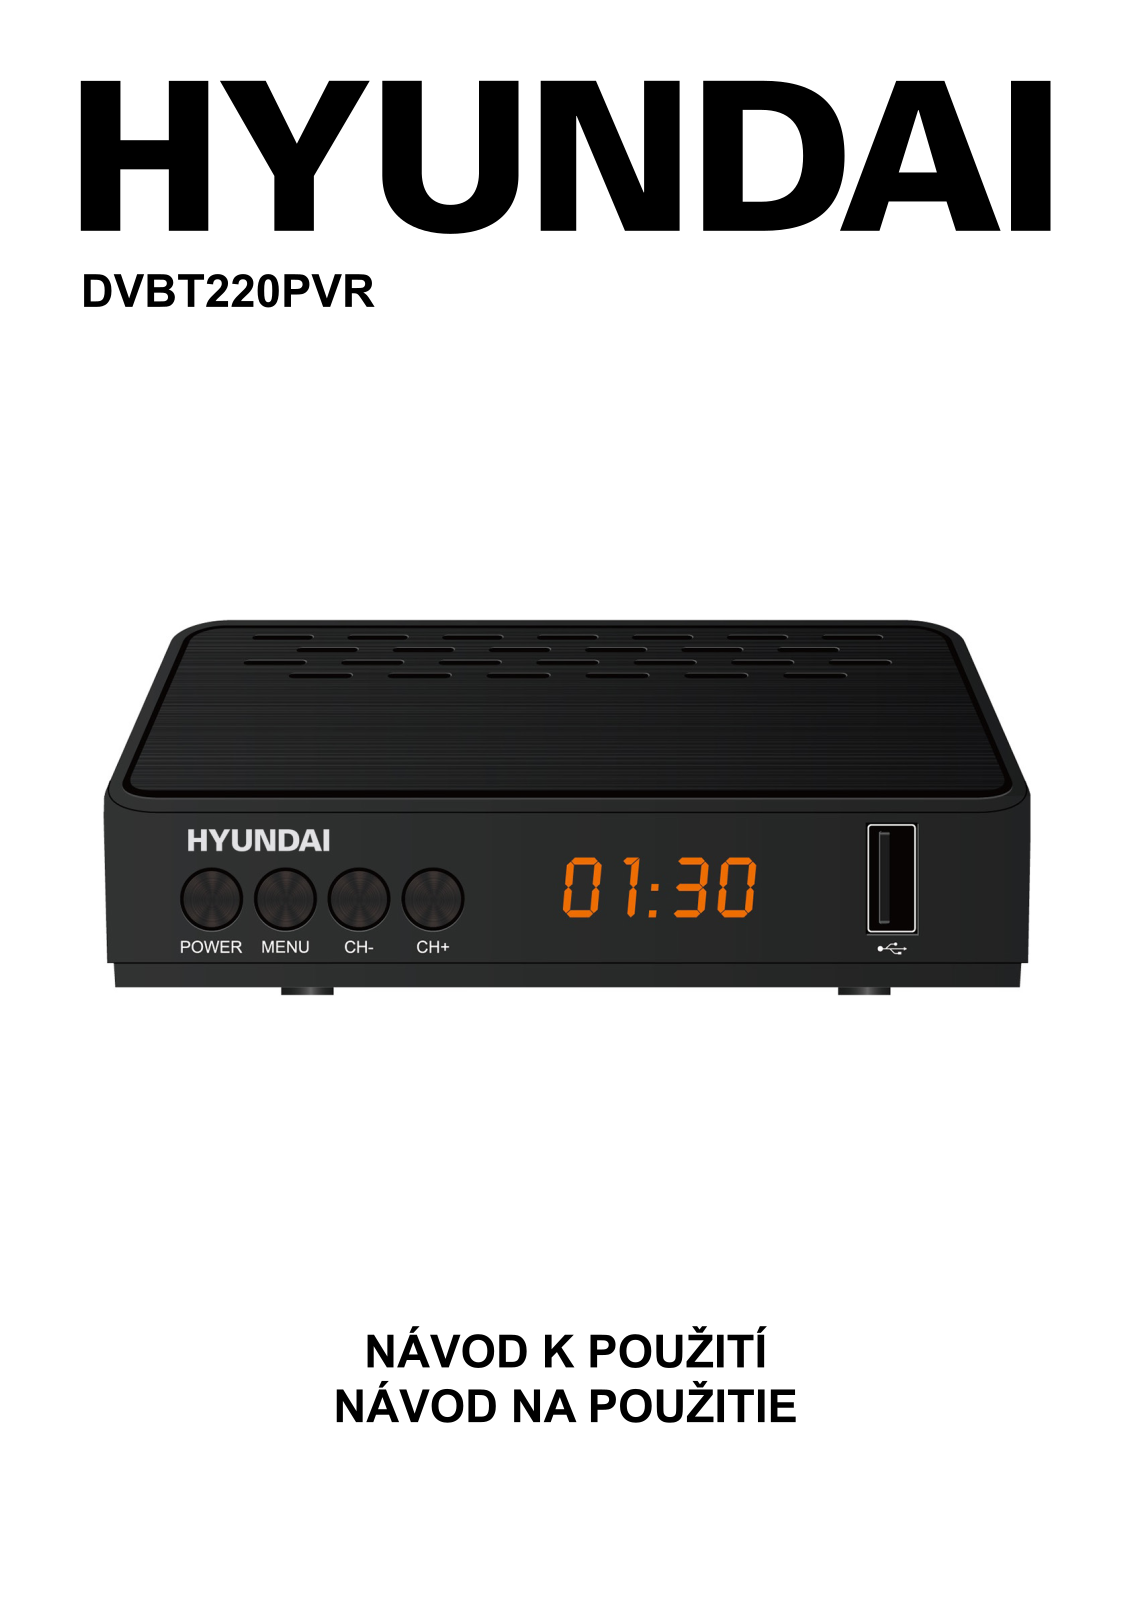 Hyundai DVBT 220 PVR User Manual